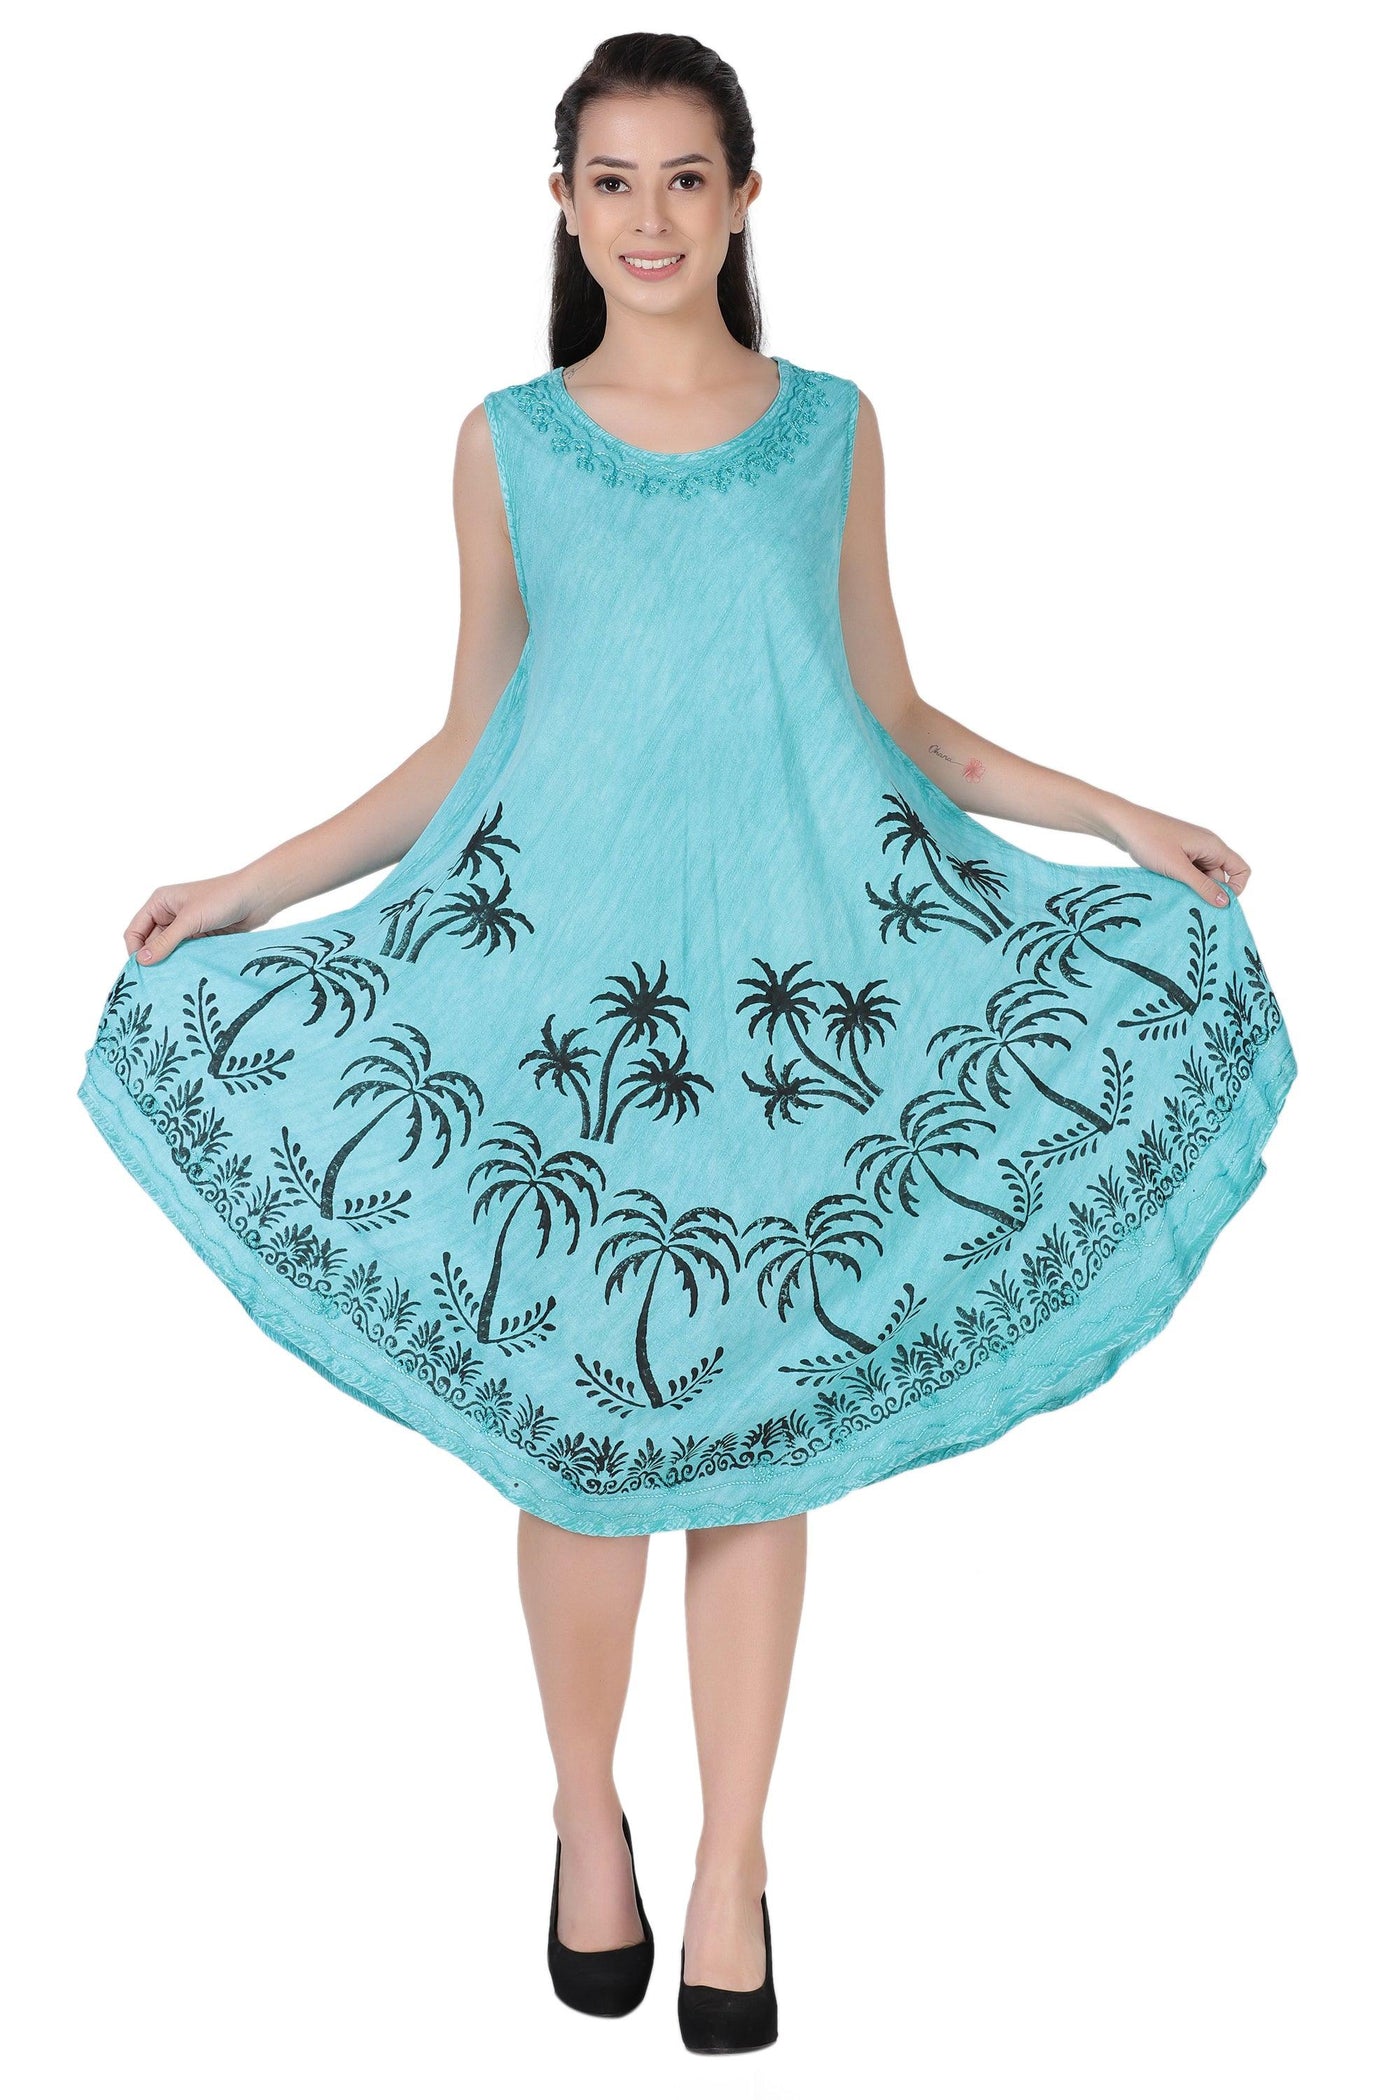 Palm Tree Block Print Dress 482157  - Advance Apparels Inc